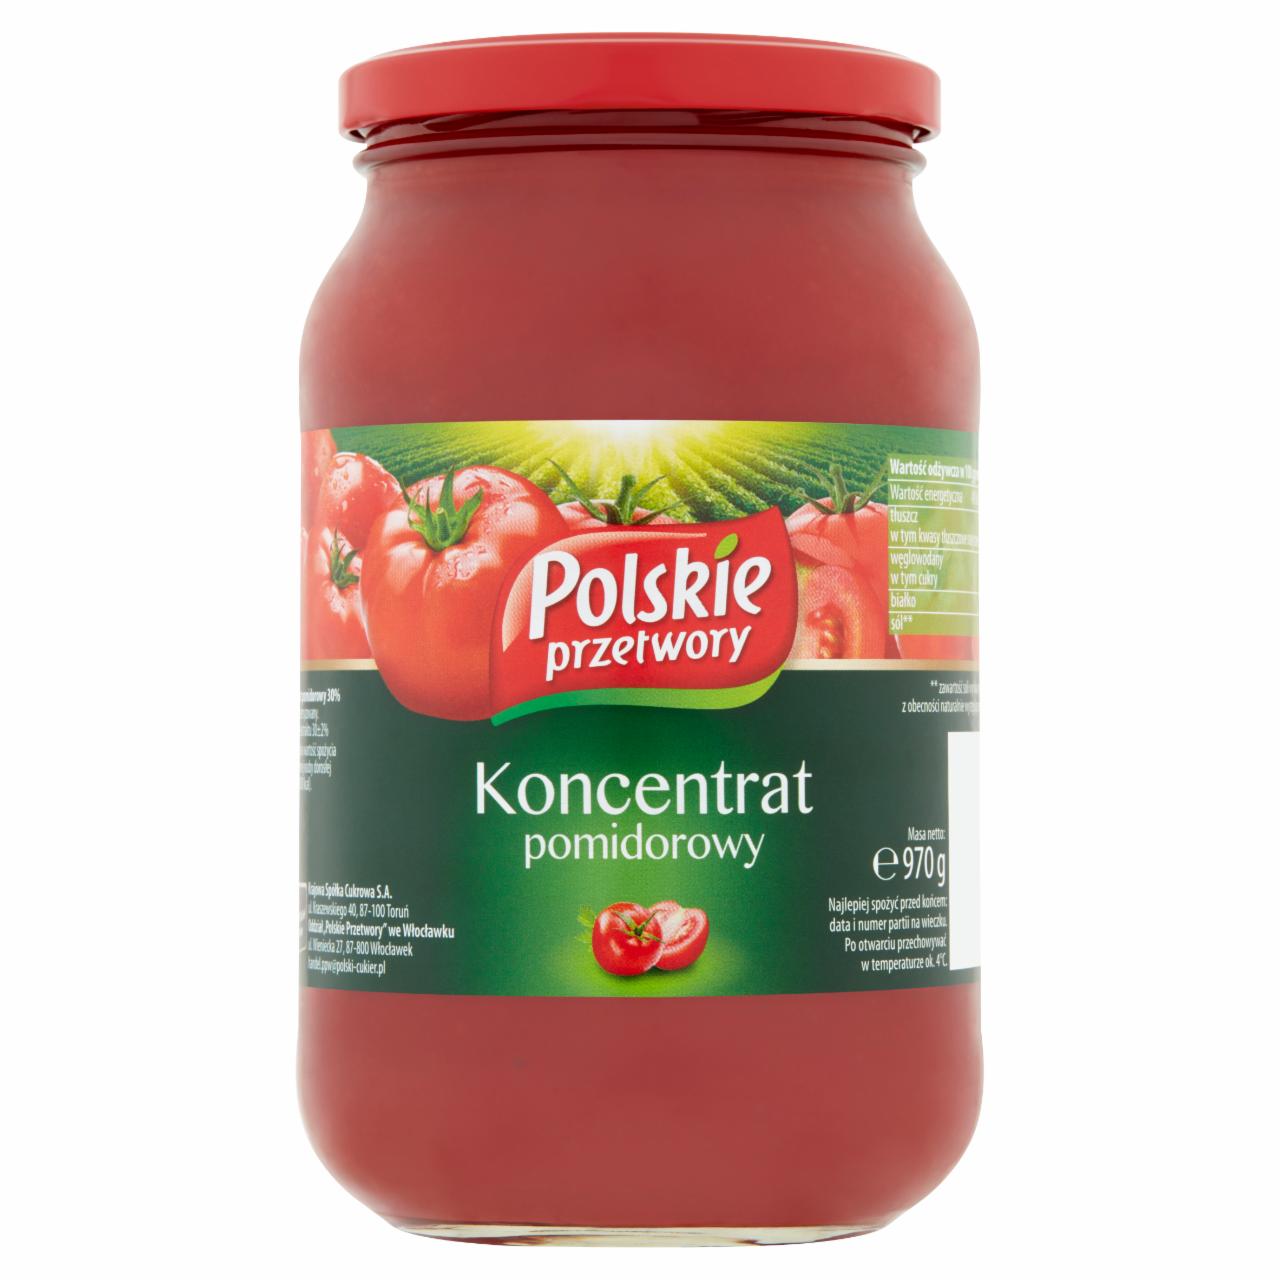 Zdjęcia - Polskie przetwory Koncentrat pomidorowy 970 g